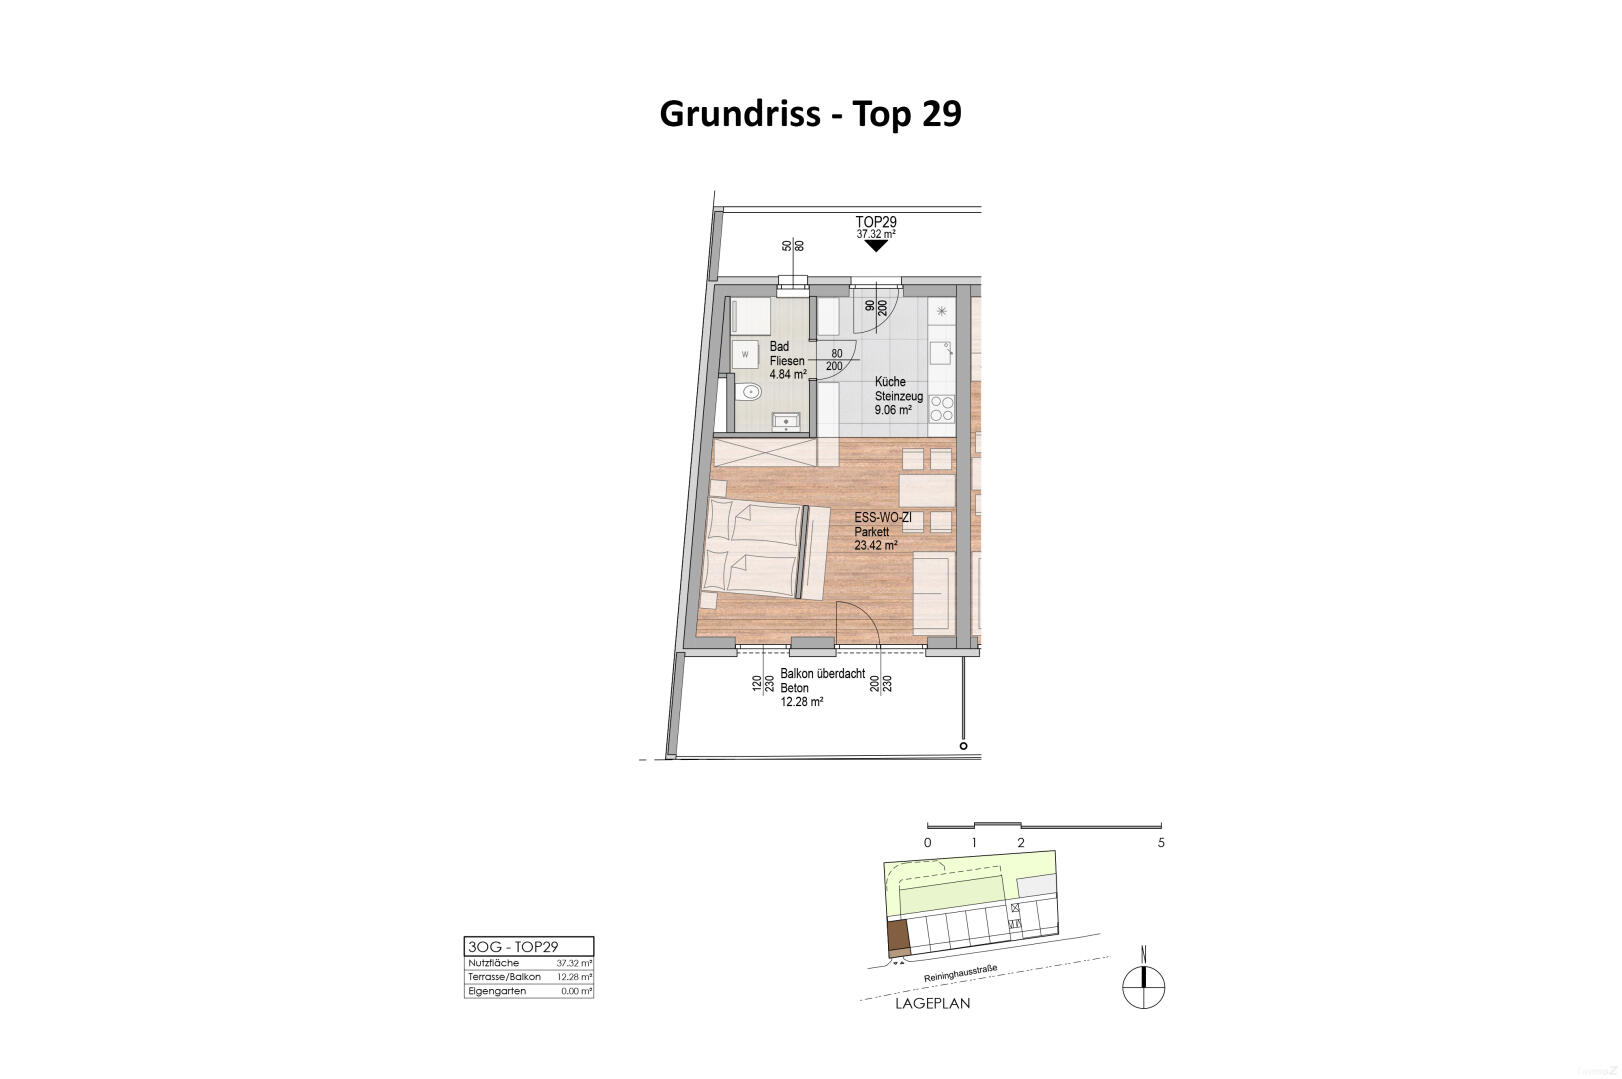 Wohnung zu mieten: Reininghausstraße 56, 8020 Graz - Grundriss Top 29